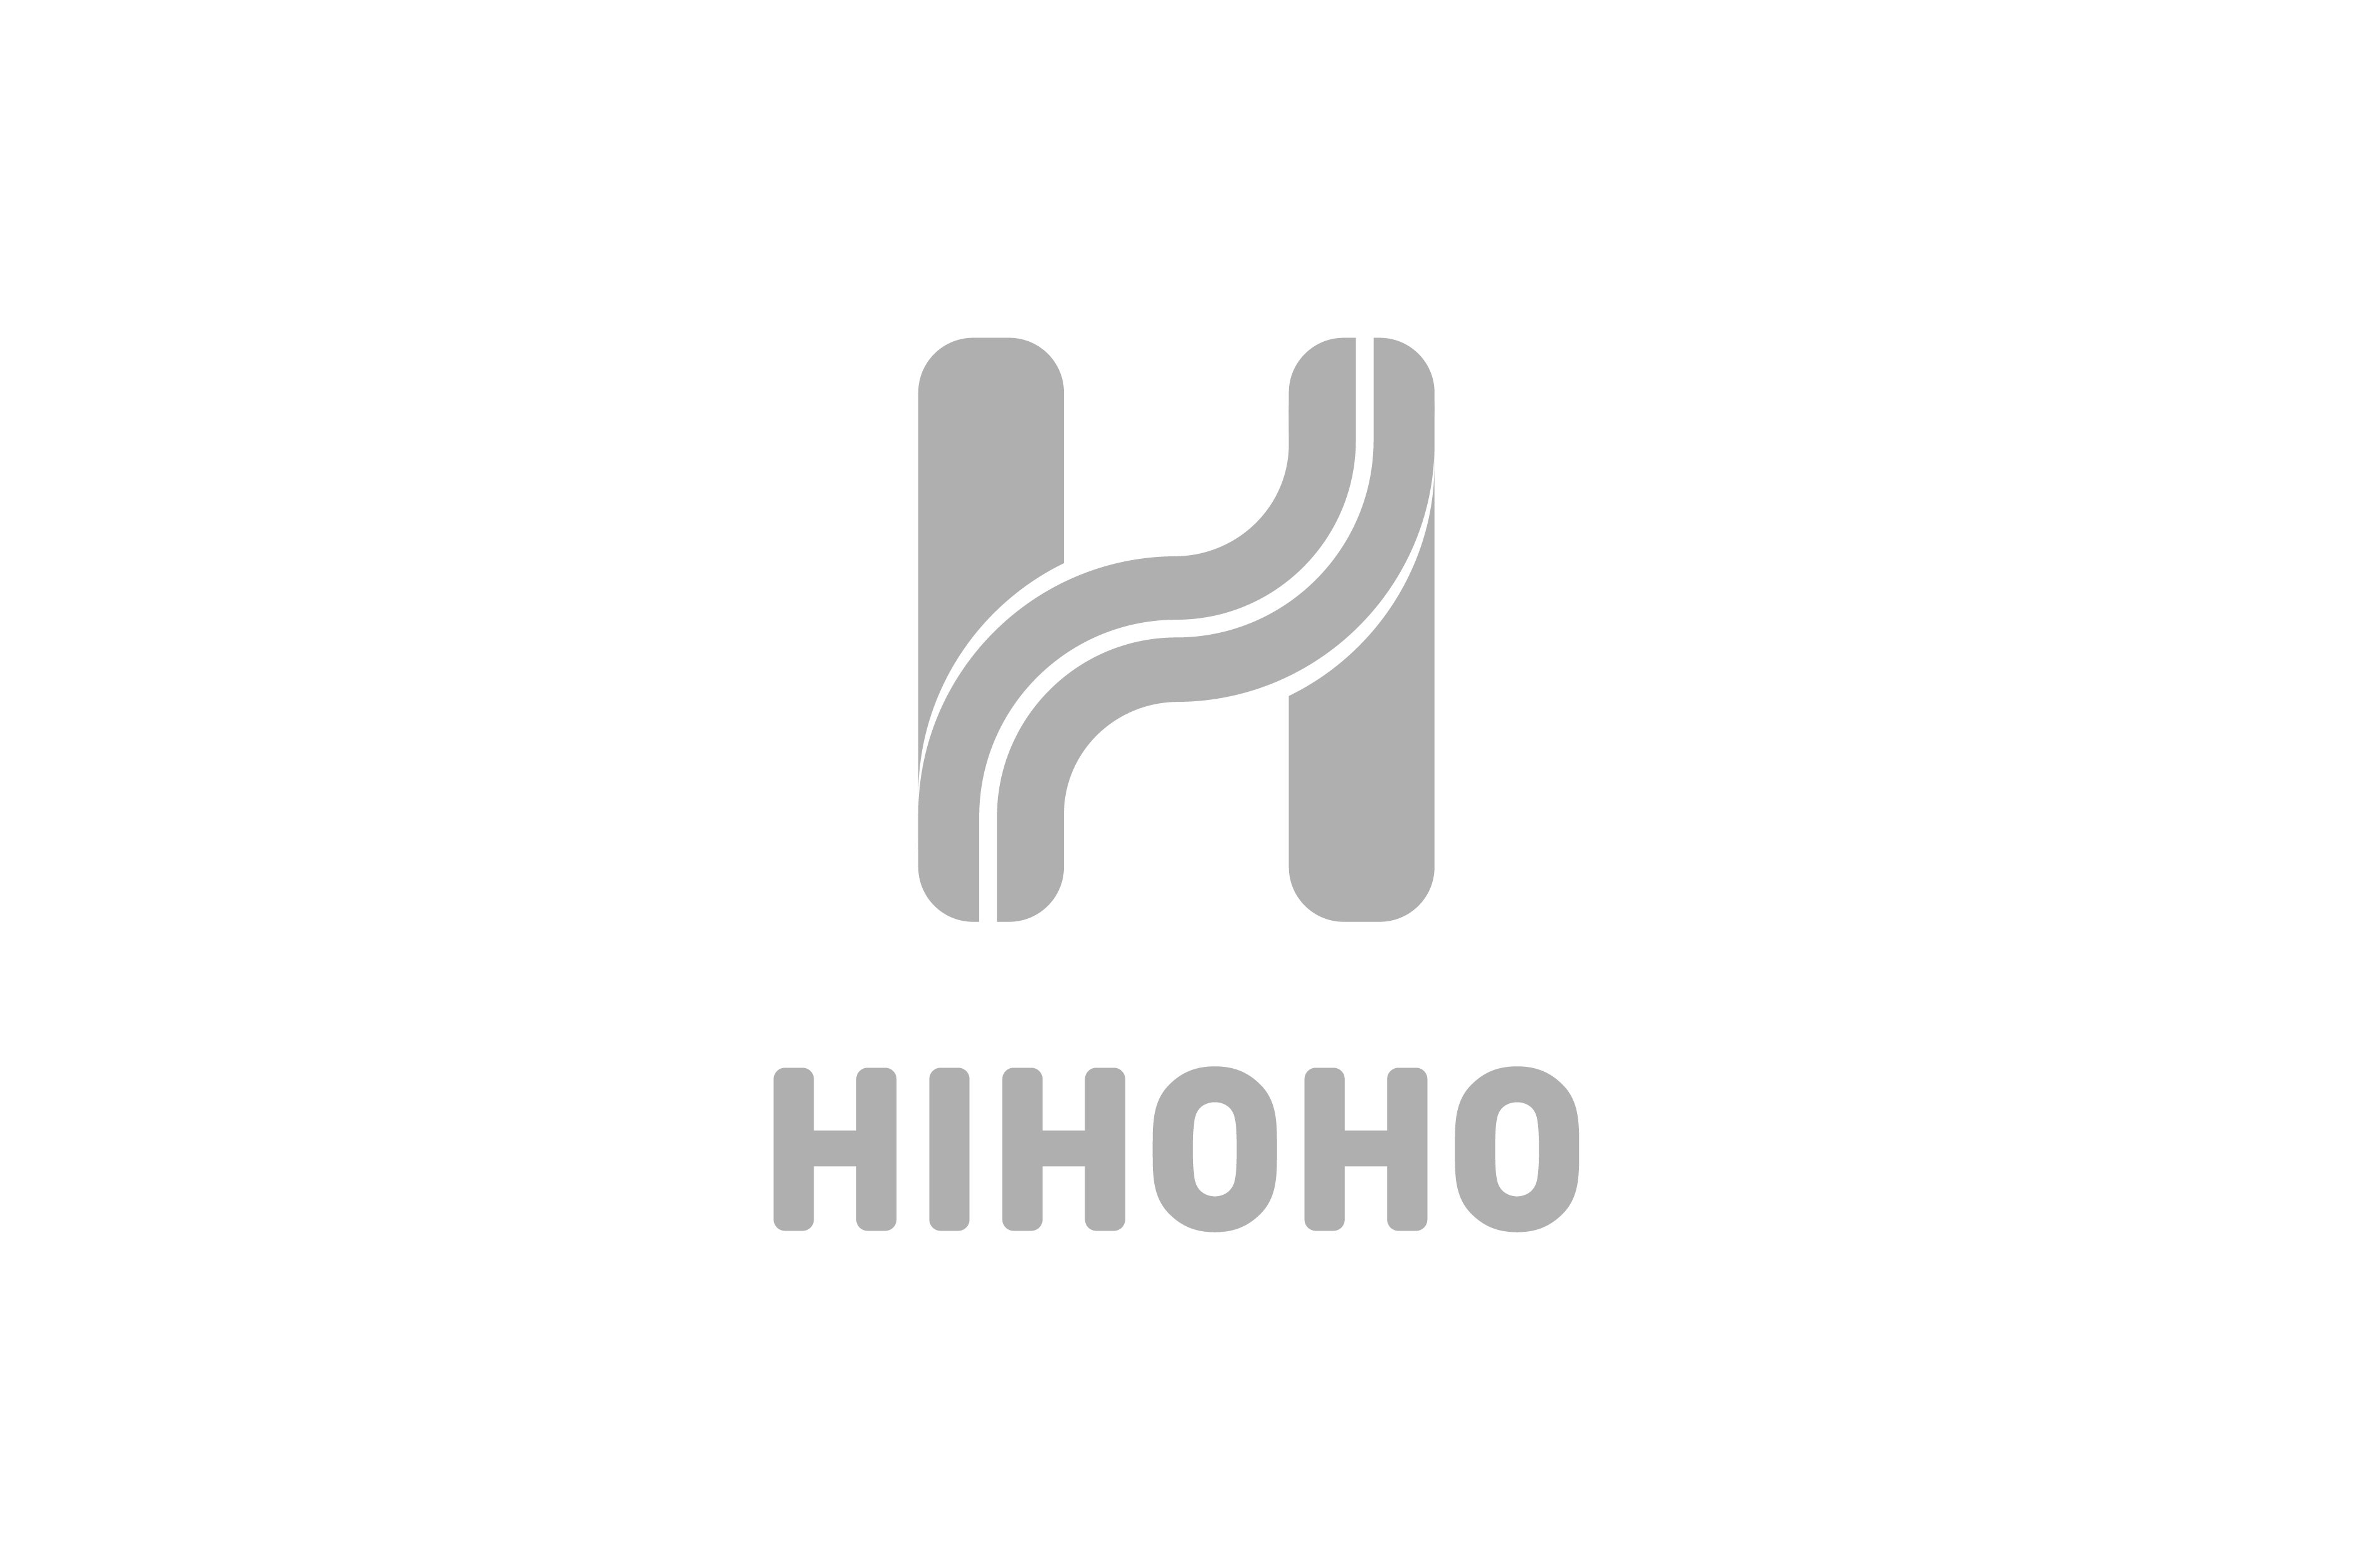 Trademark Logo HIHOHO